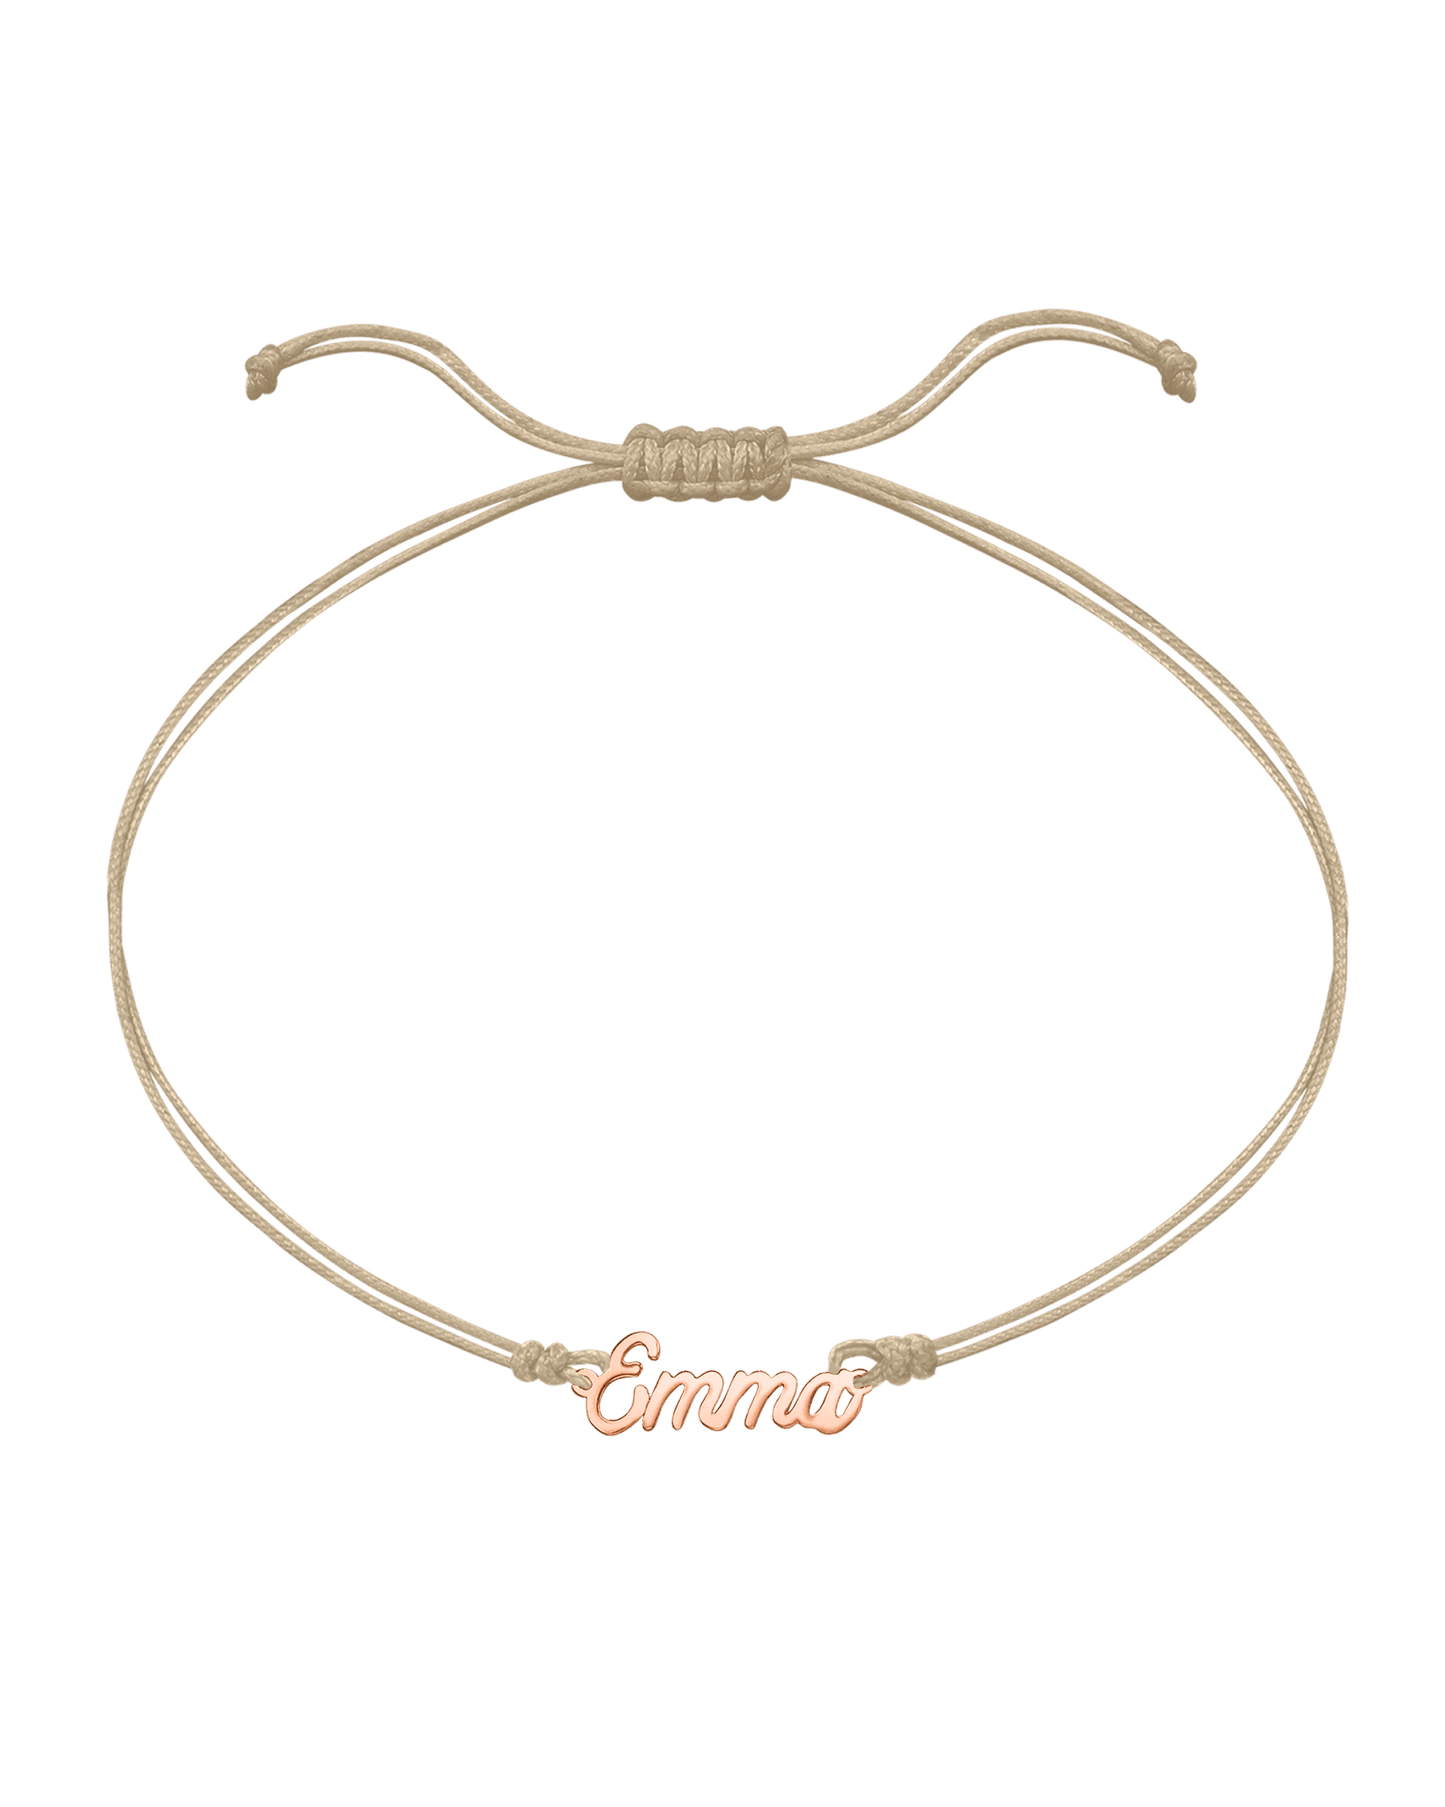 Name Plate String of Love - 14K Rose Gold Bracelets 14K Solid Gold Sand 1 